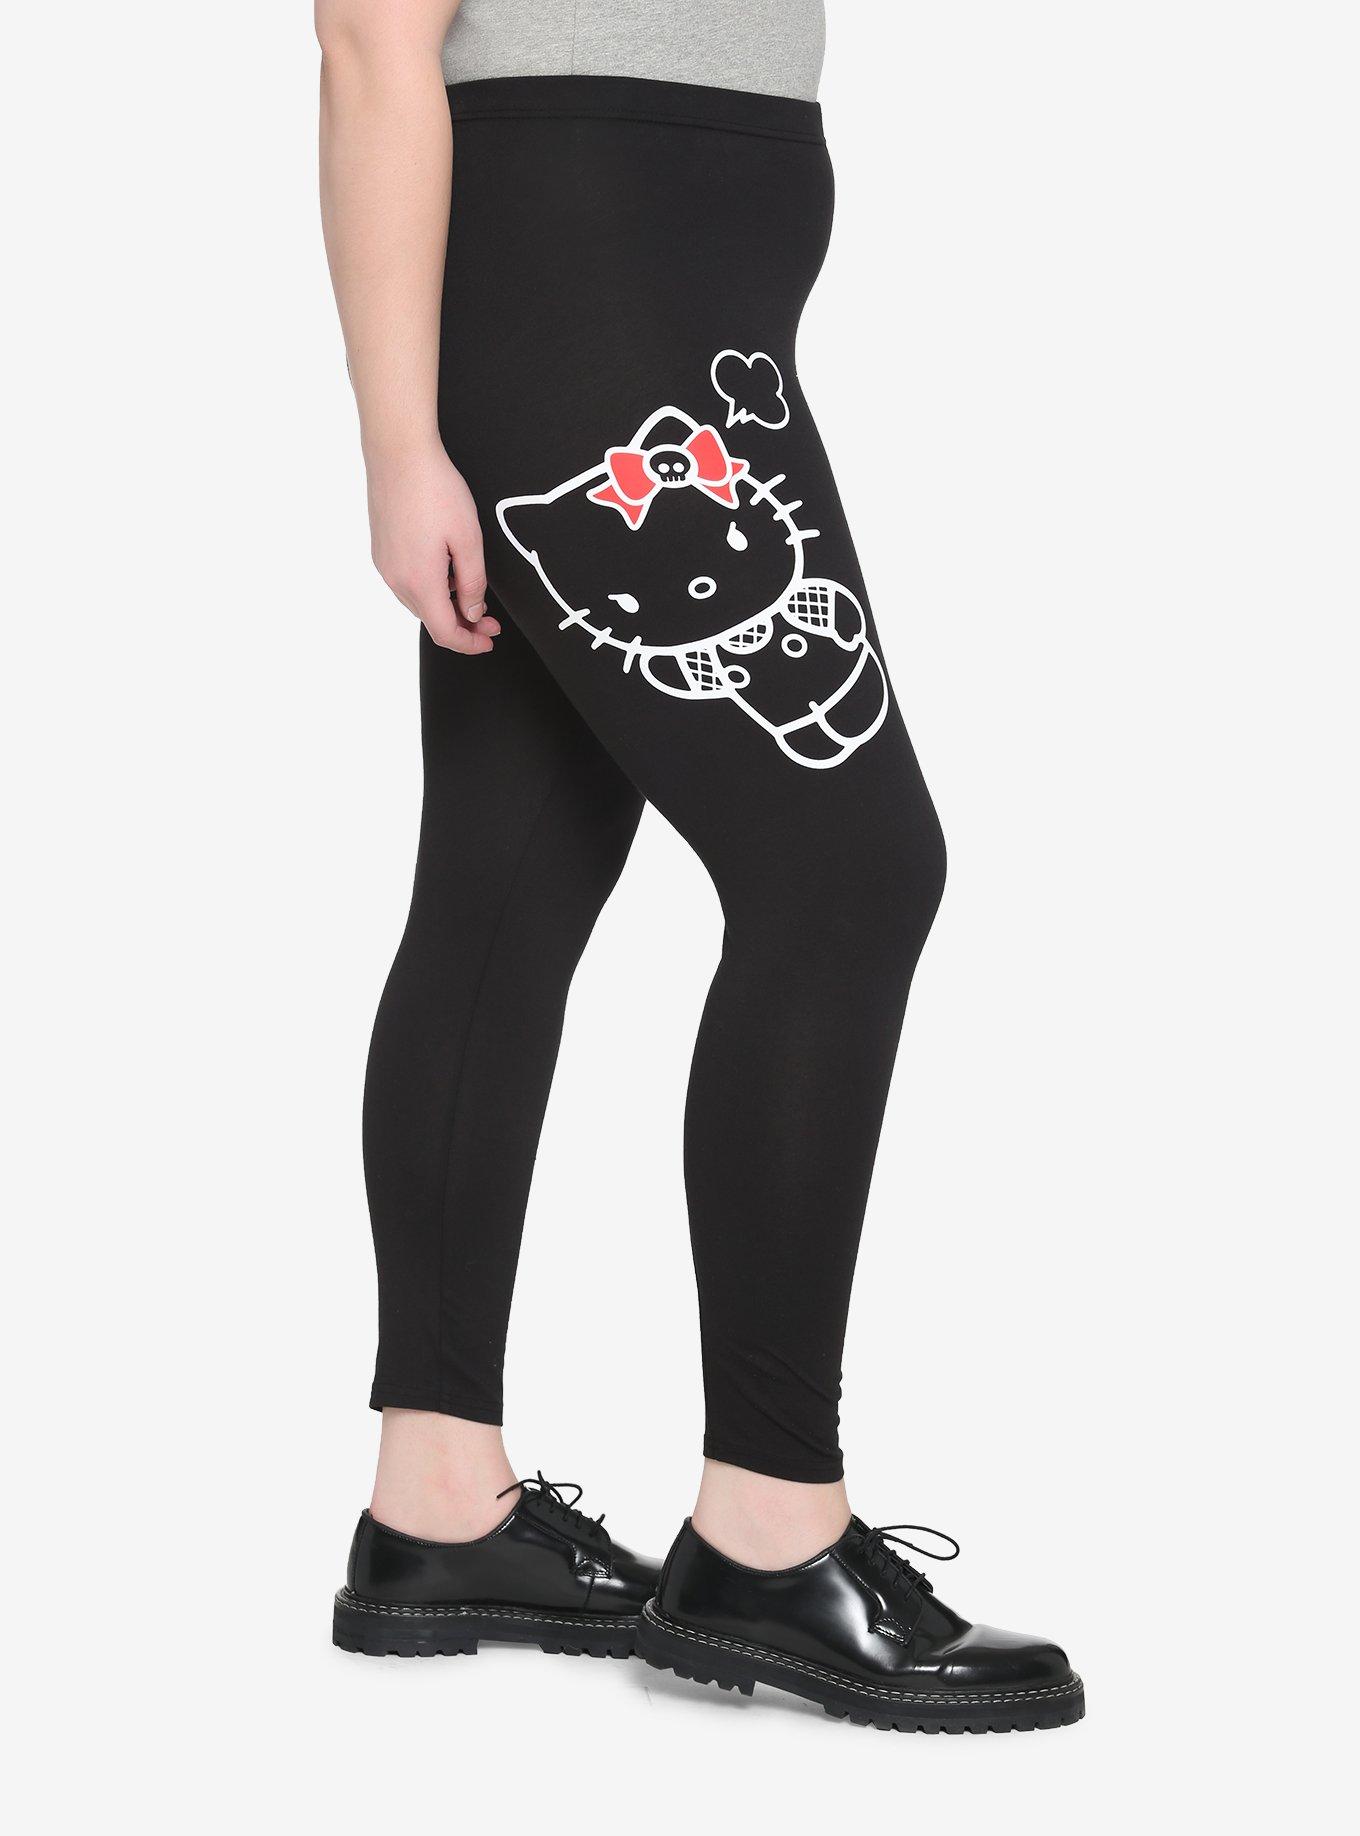 Hello Kitty Red Bows Leggings Plus Size